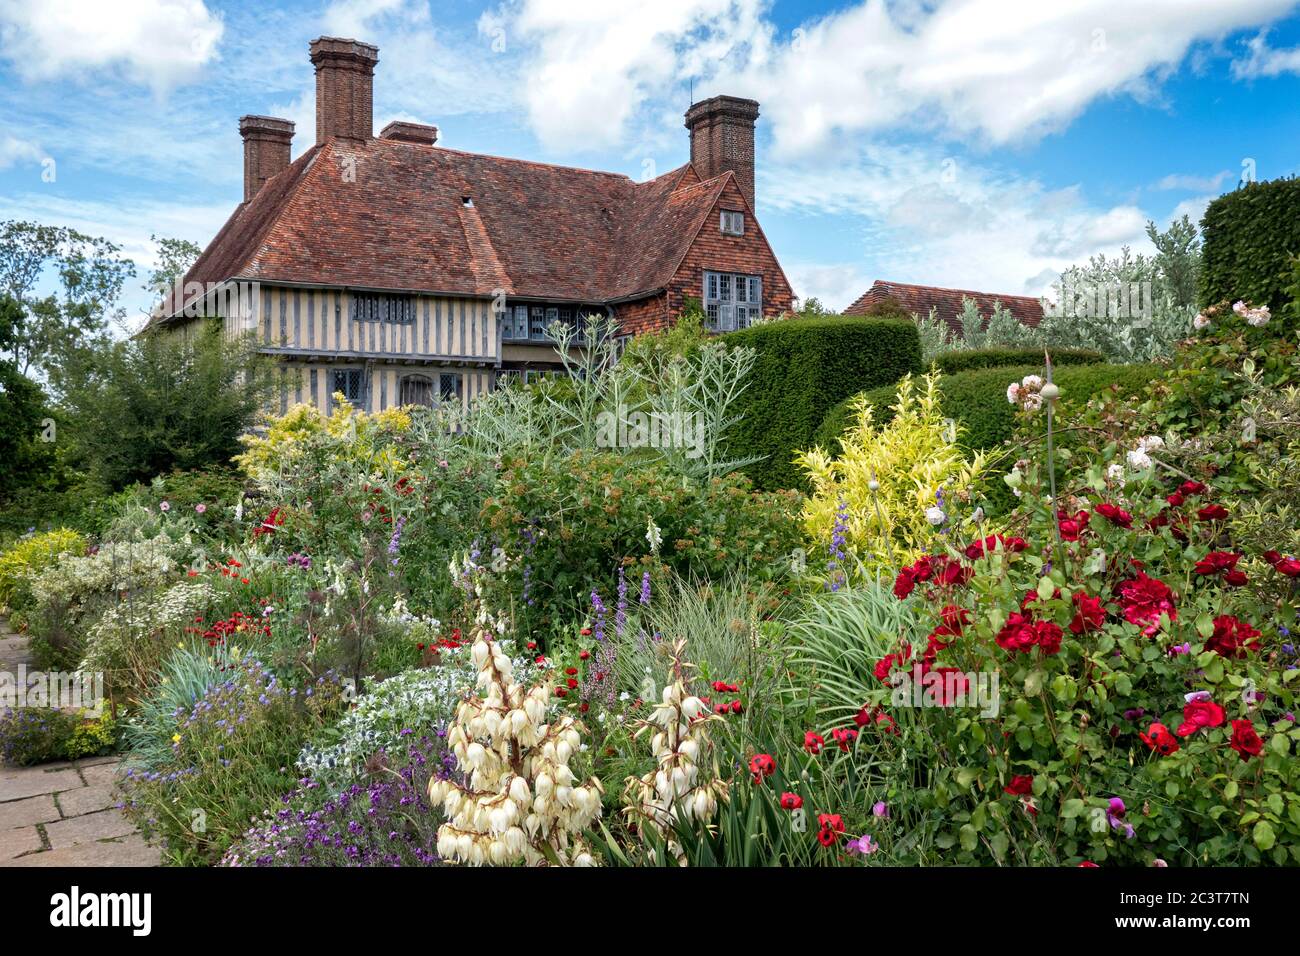 Long bord à la maison de Great Dixter et jardins Northiam East Sussex Royaume-Uni Banque D'Images